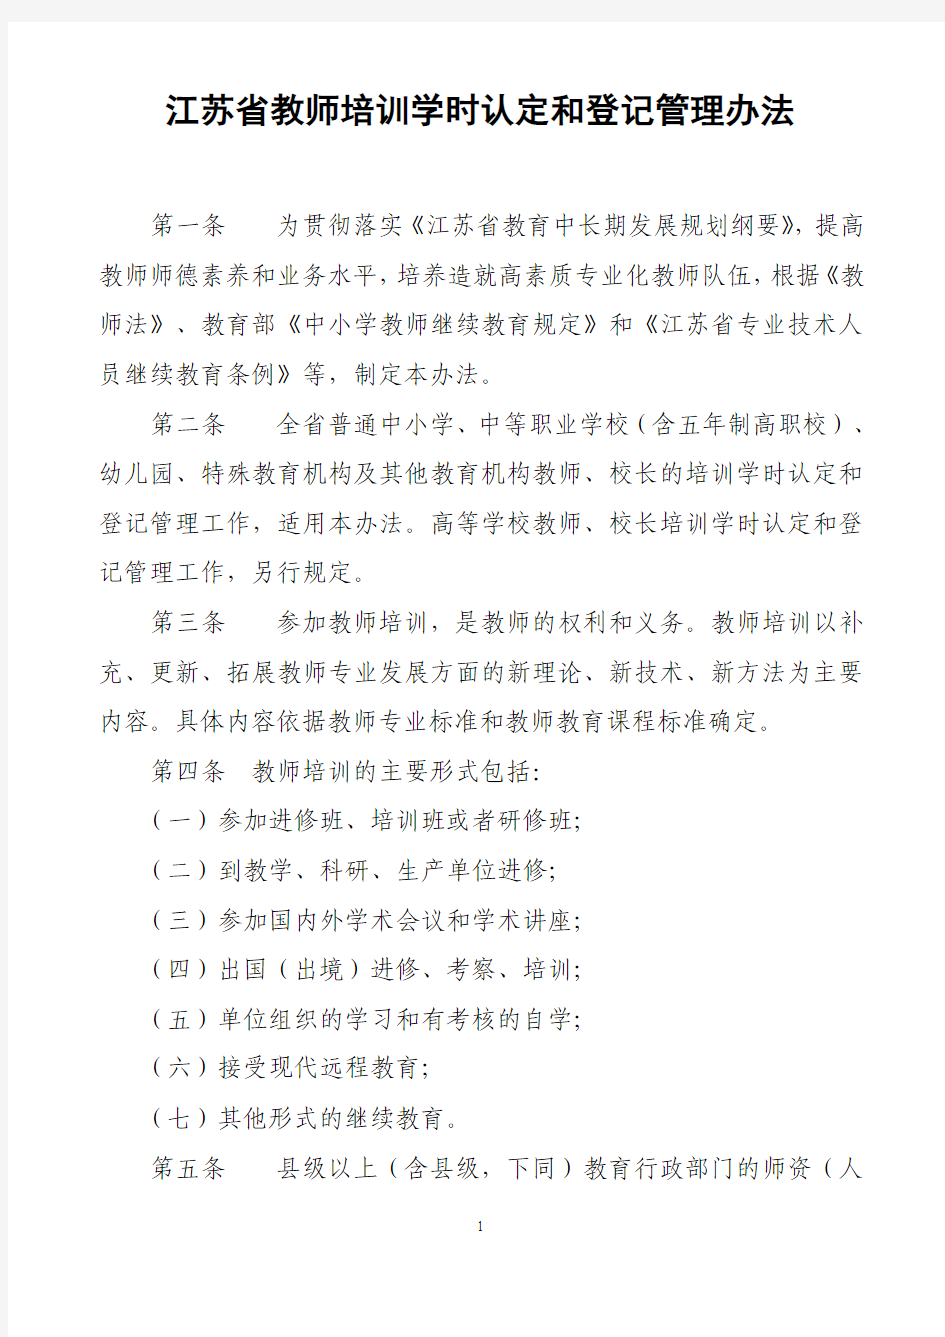 江苏省中小学教师继续教育学时认定管理办法(正式印发稿)